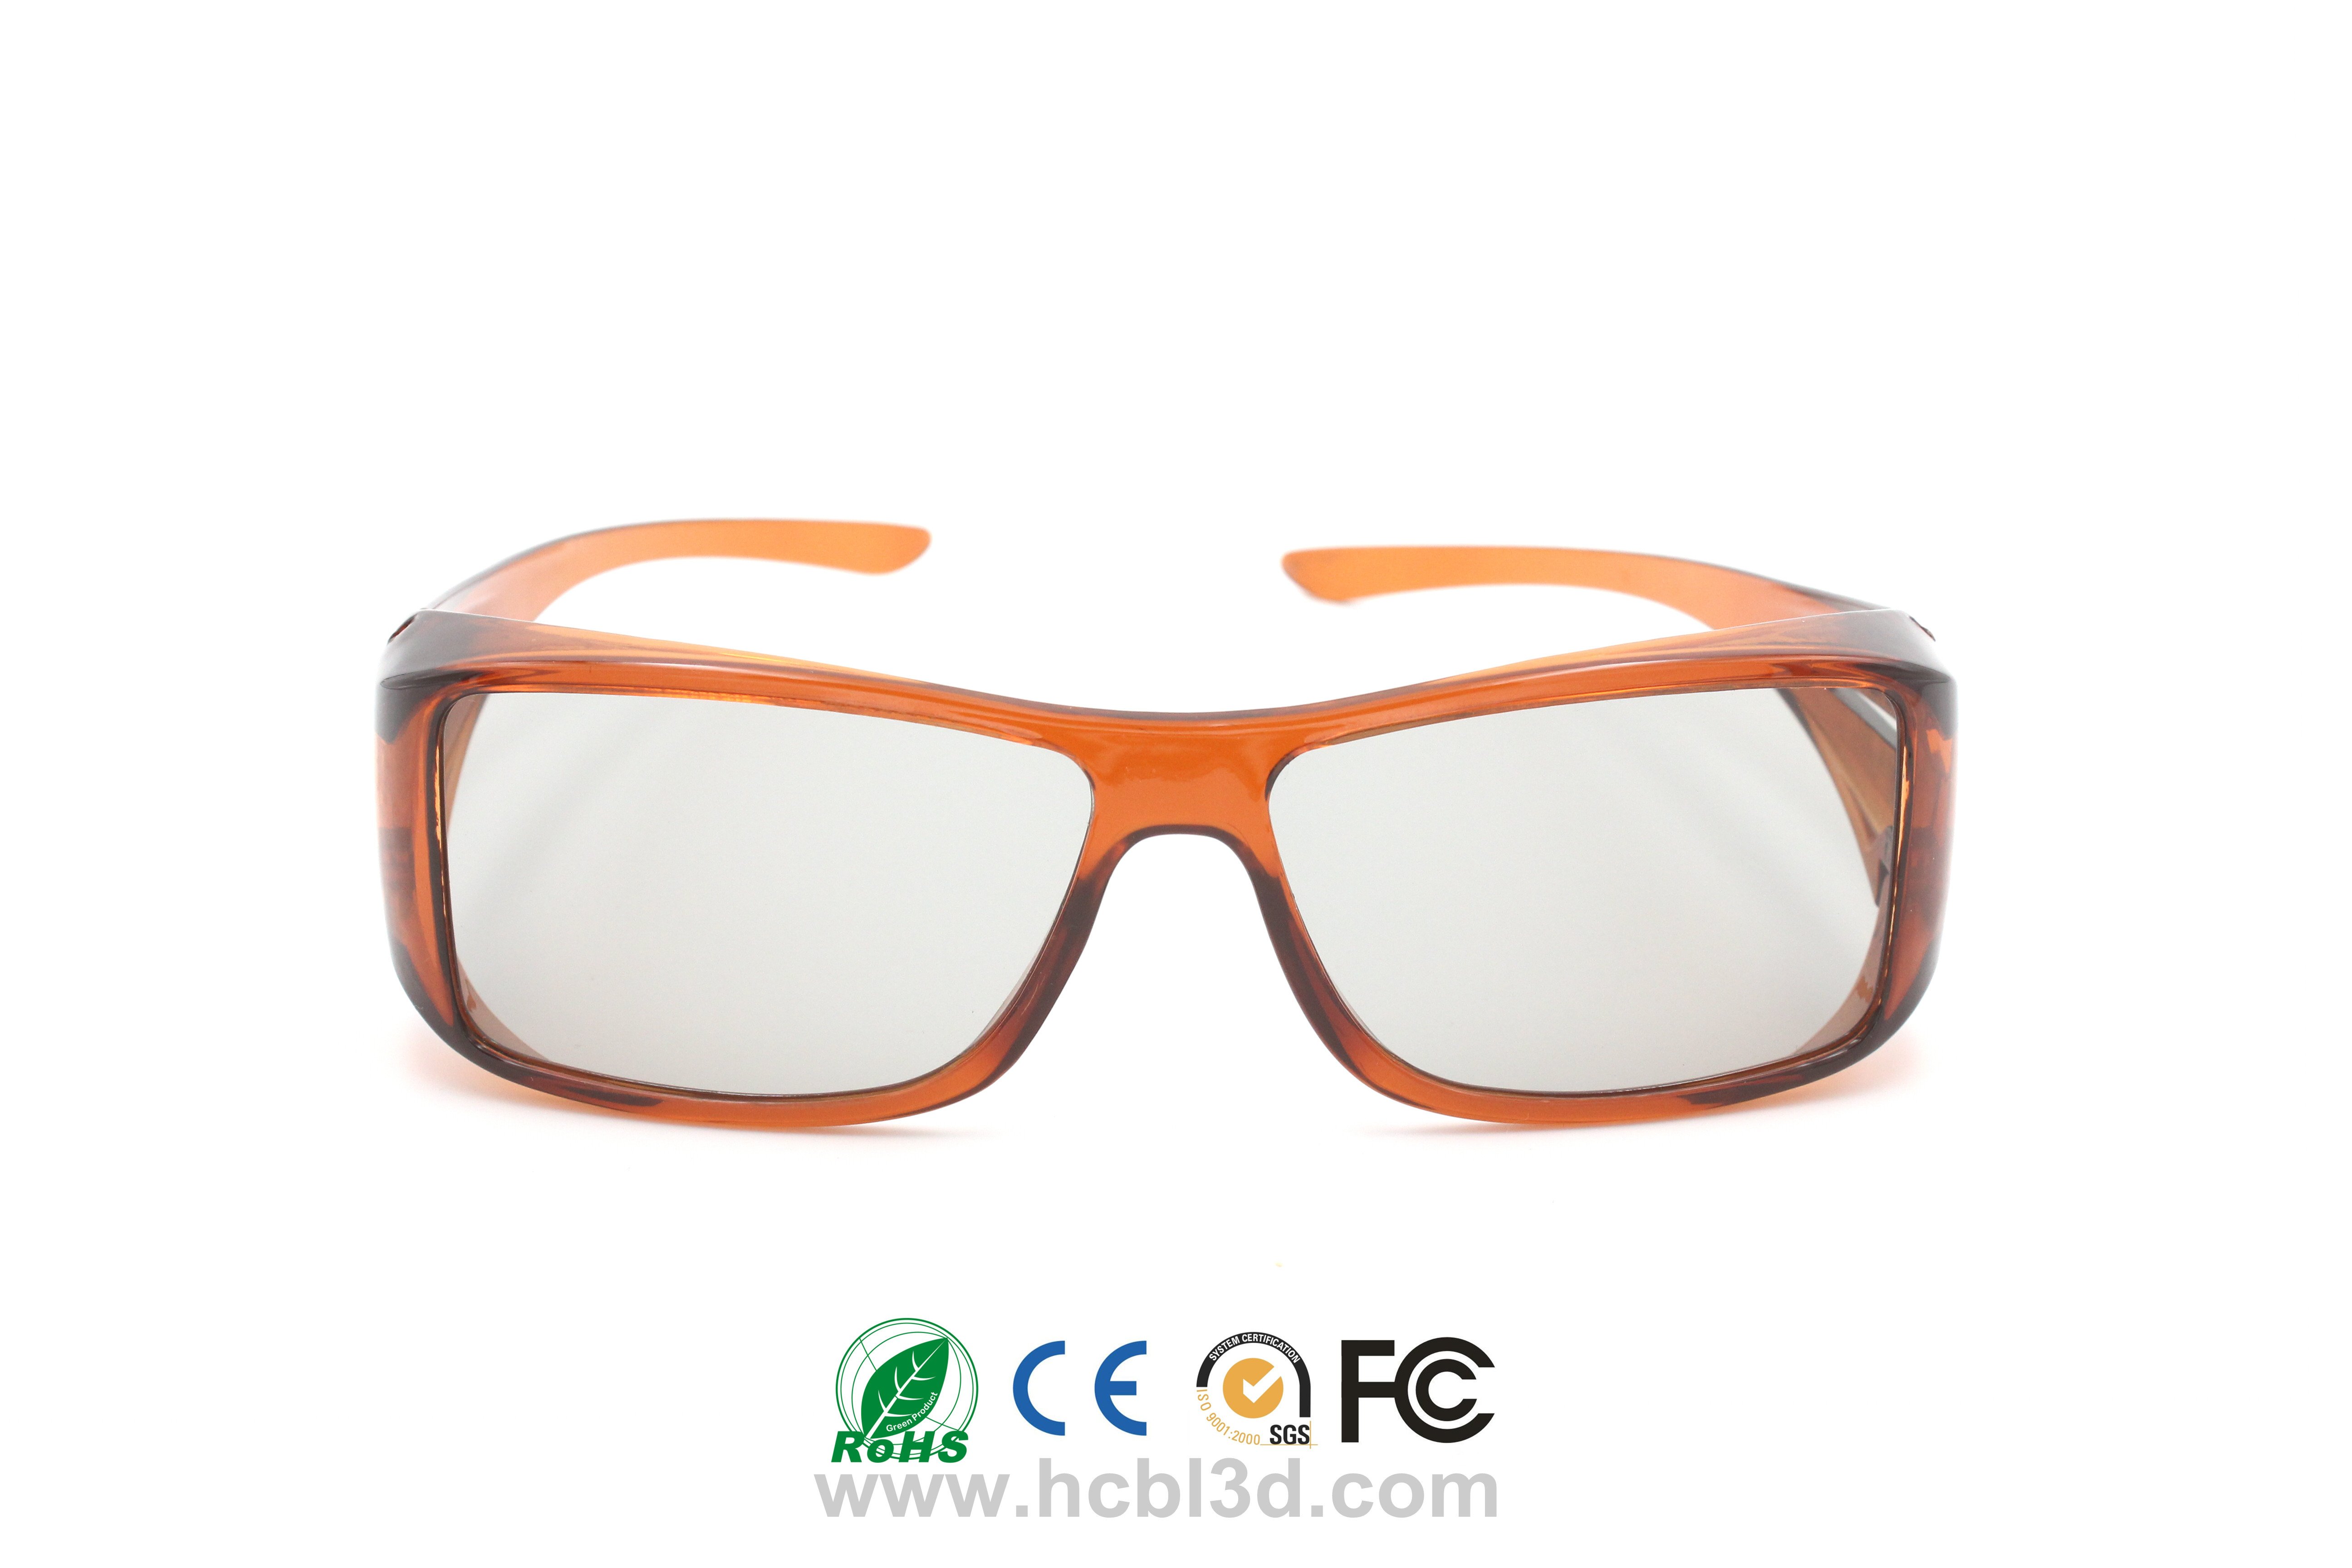 Wiederverwendbare 3D-Brille Passiv polarisiert für 3D-Filme